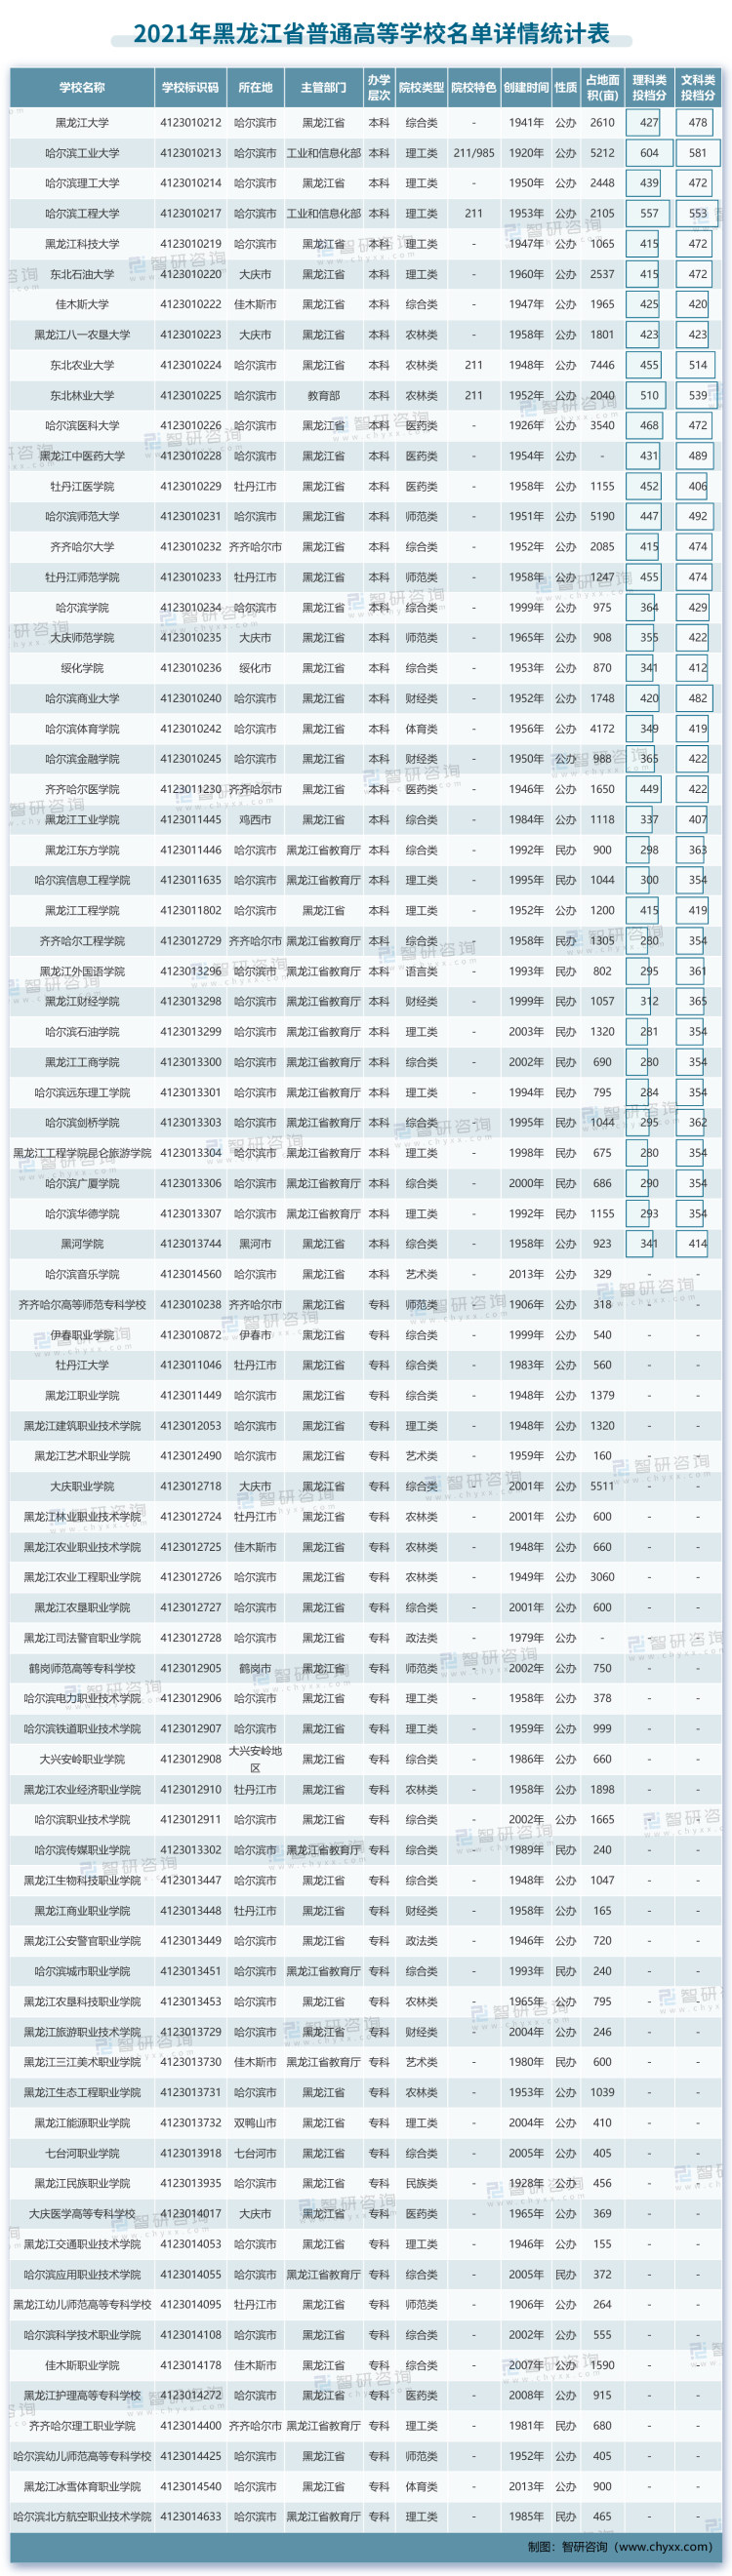 2021年高校名单-黑龙江